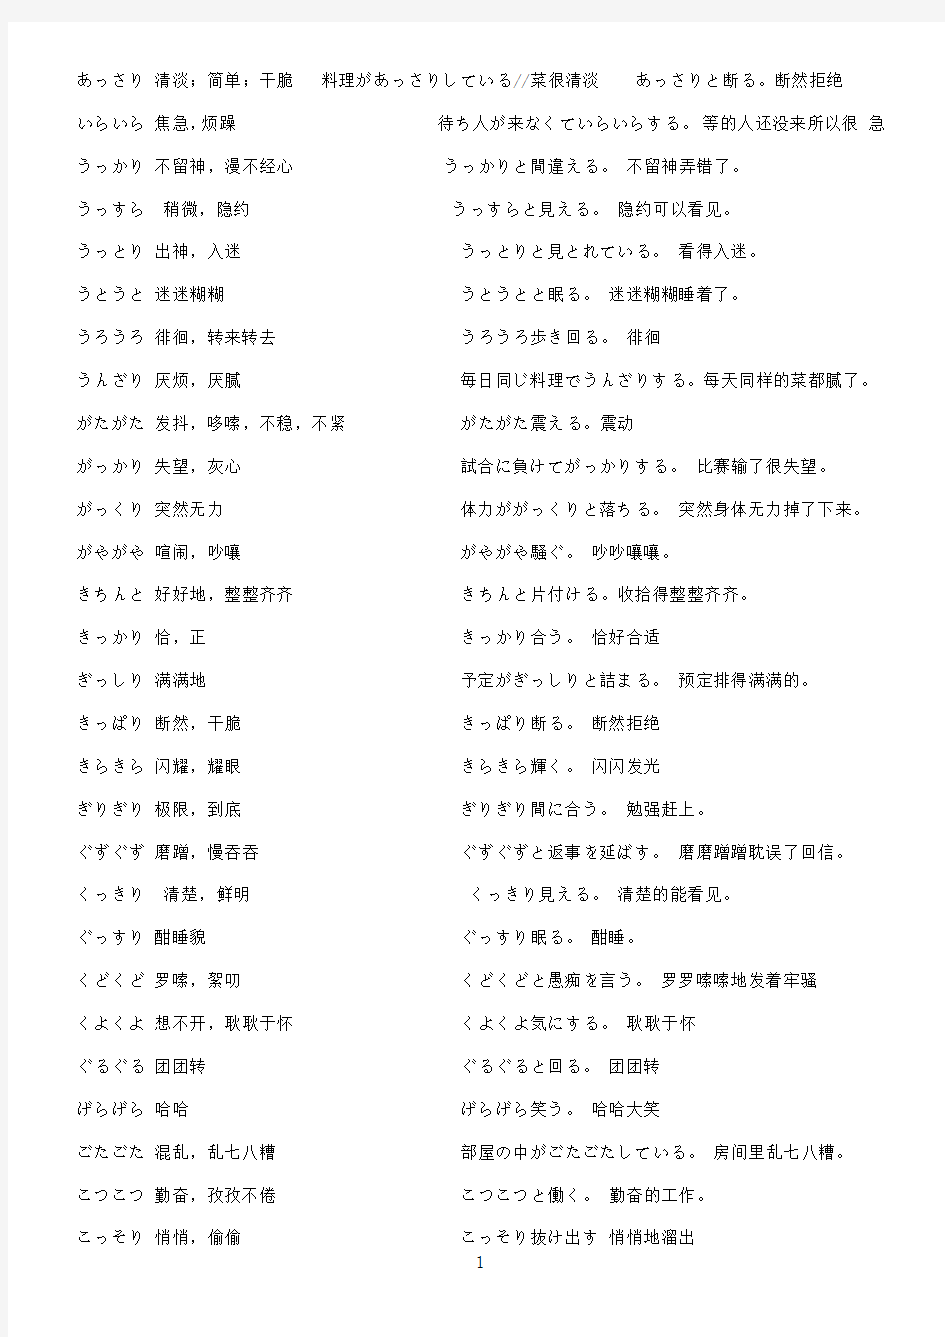 日语N1常见拟声拟态词